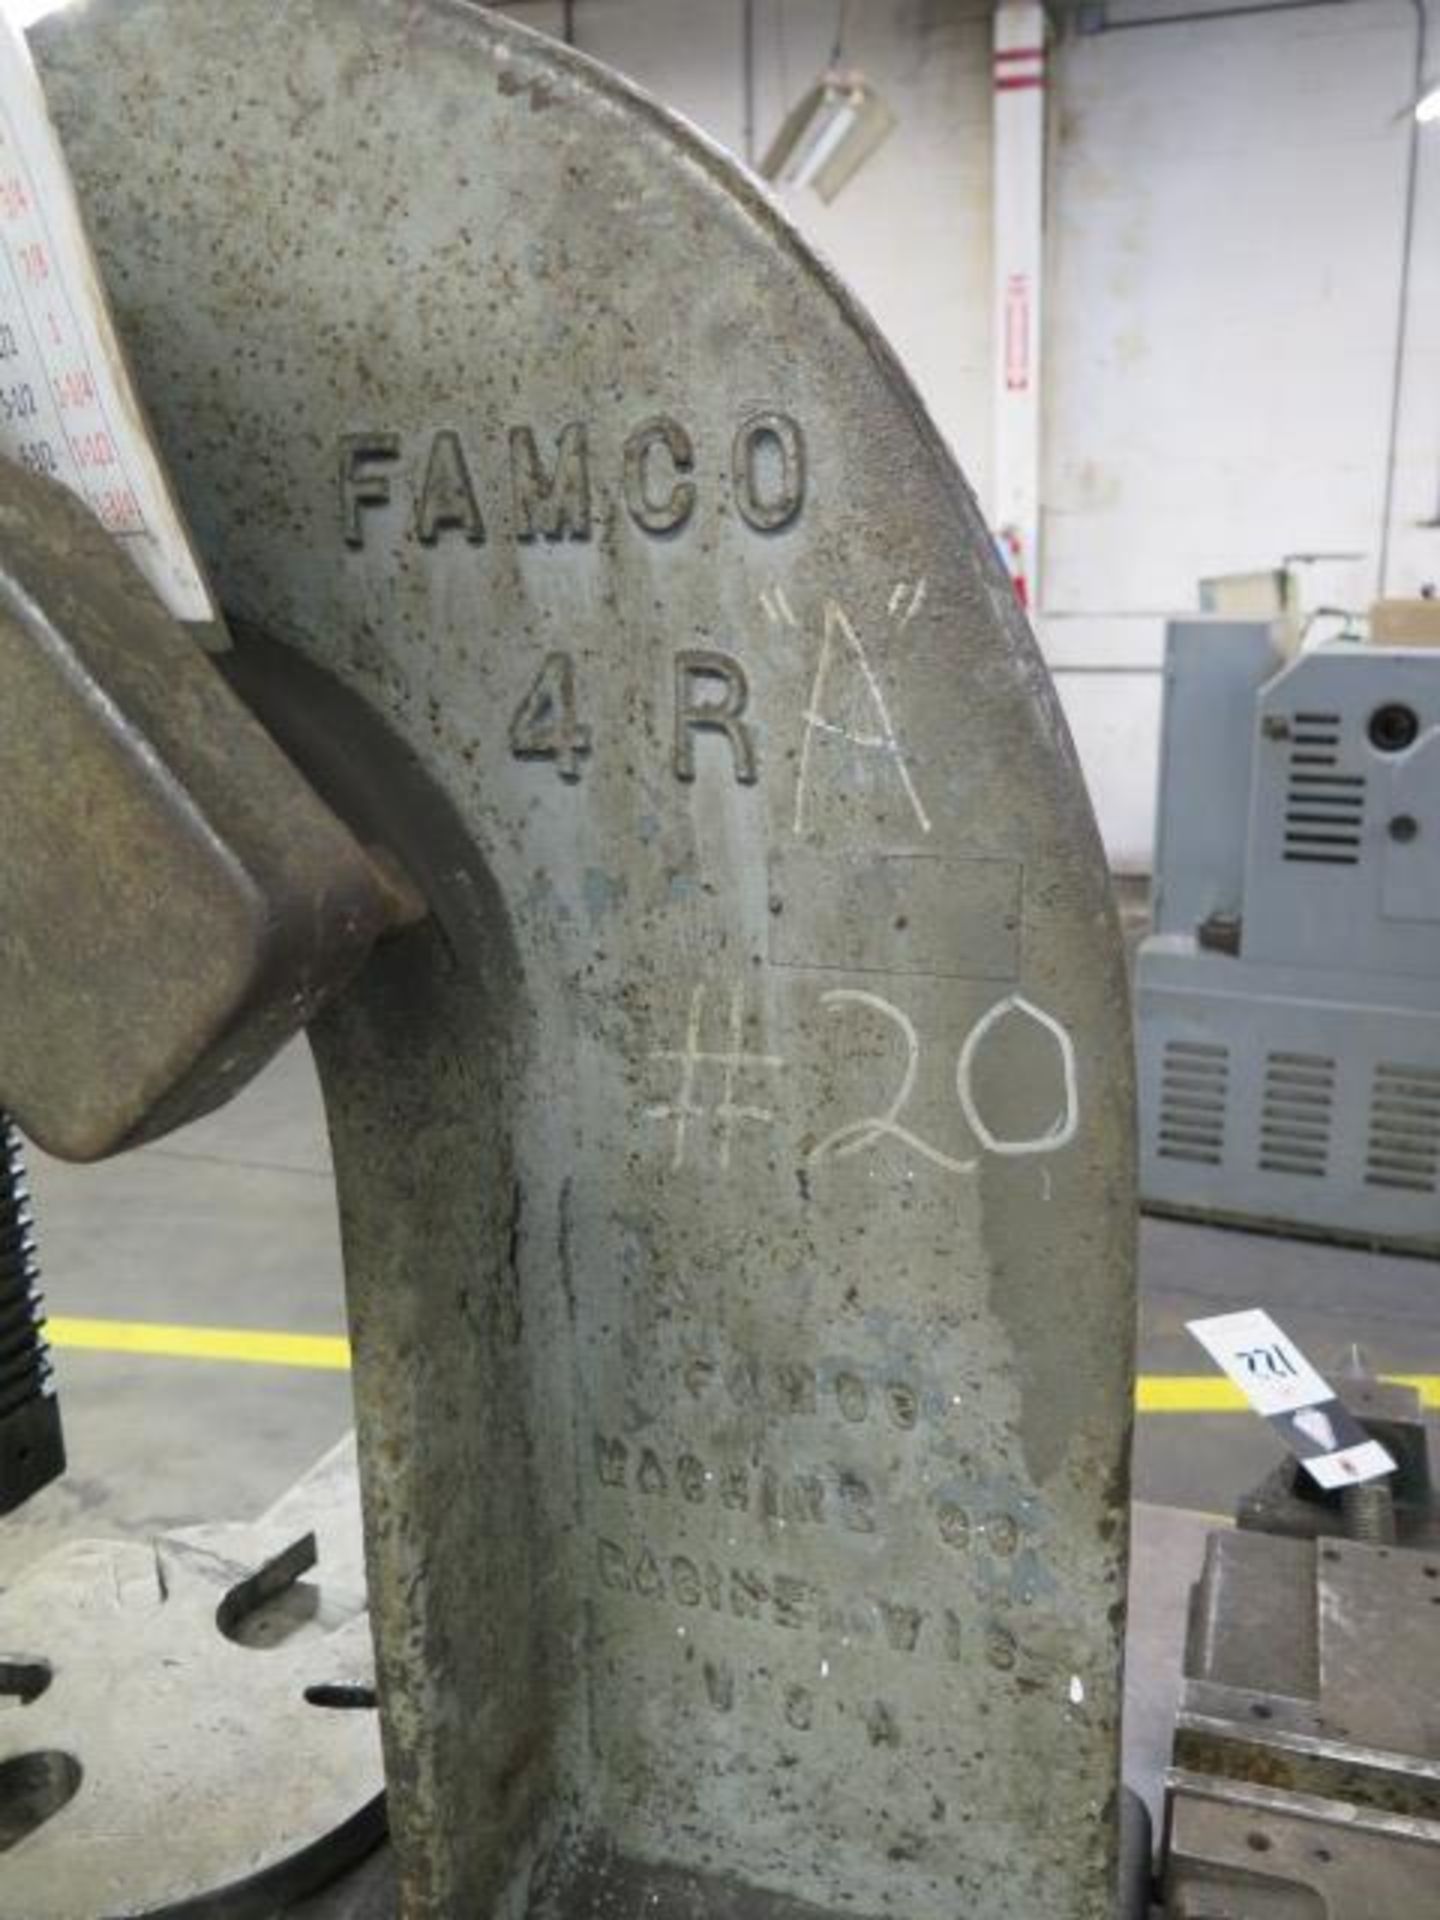 Famco No.4R Arbor Press (SOLD AS-IS - NO WARRANTY) - Image 3 of 4